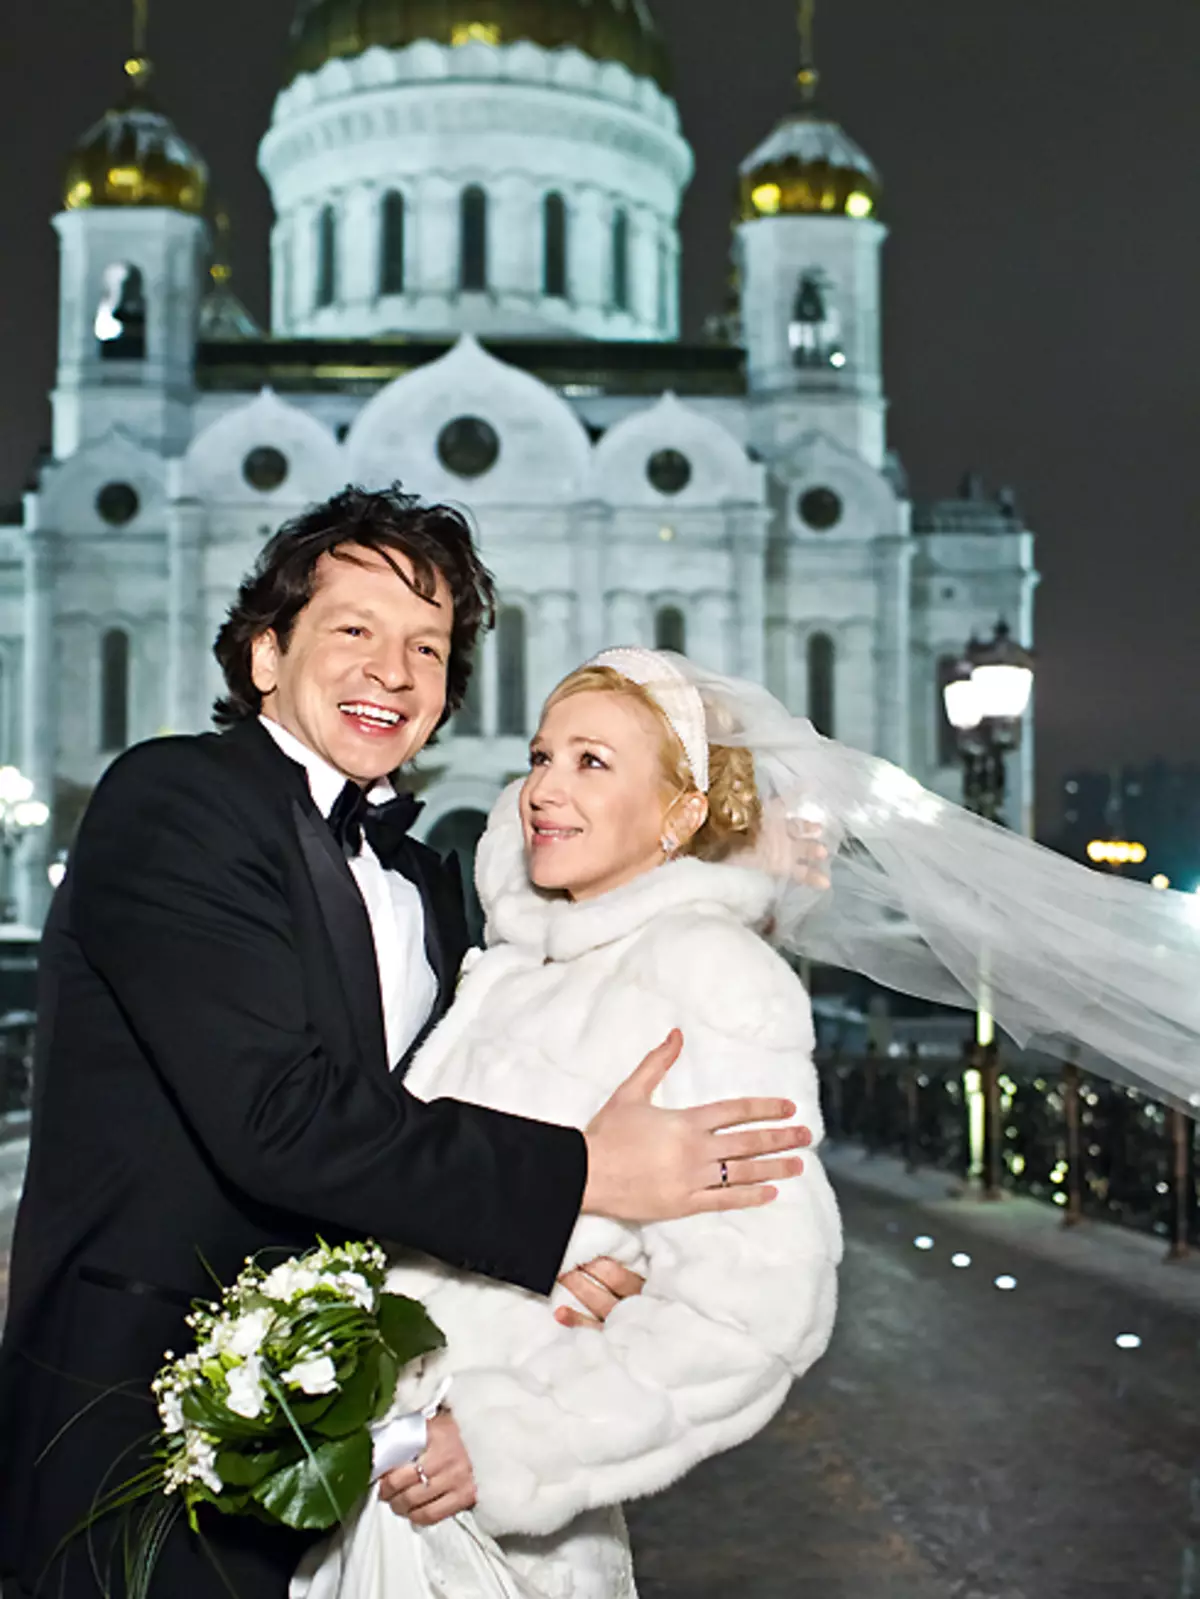 Irina e Maxim hanno deciso di sposarsi per il terzo giorno di datazione